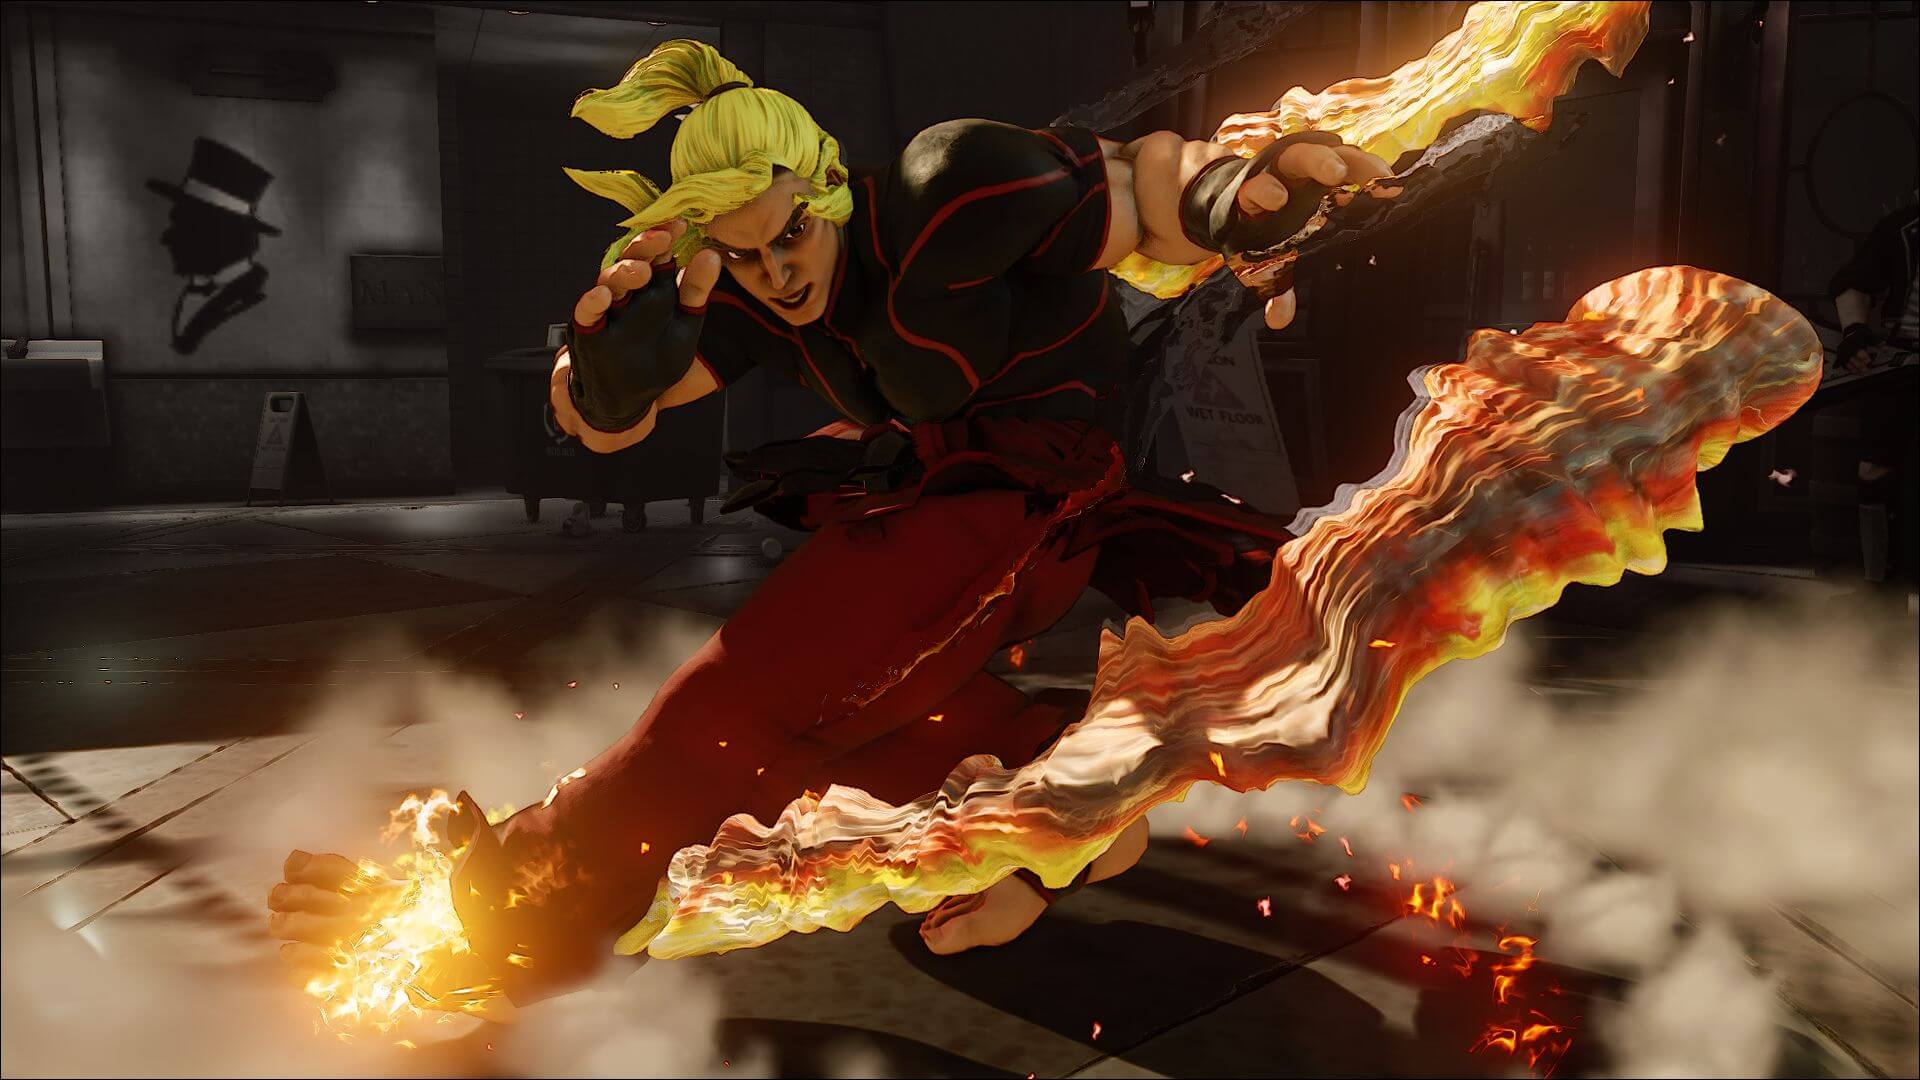 Tekken или Street Fighter: из какой серии игр эти персонажи?